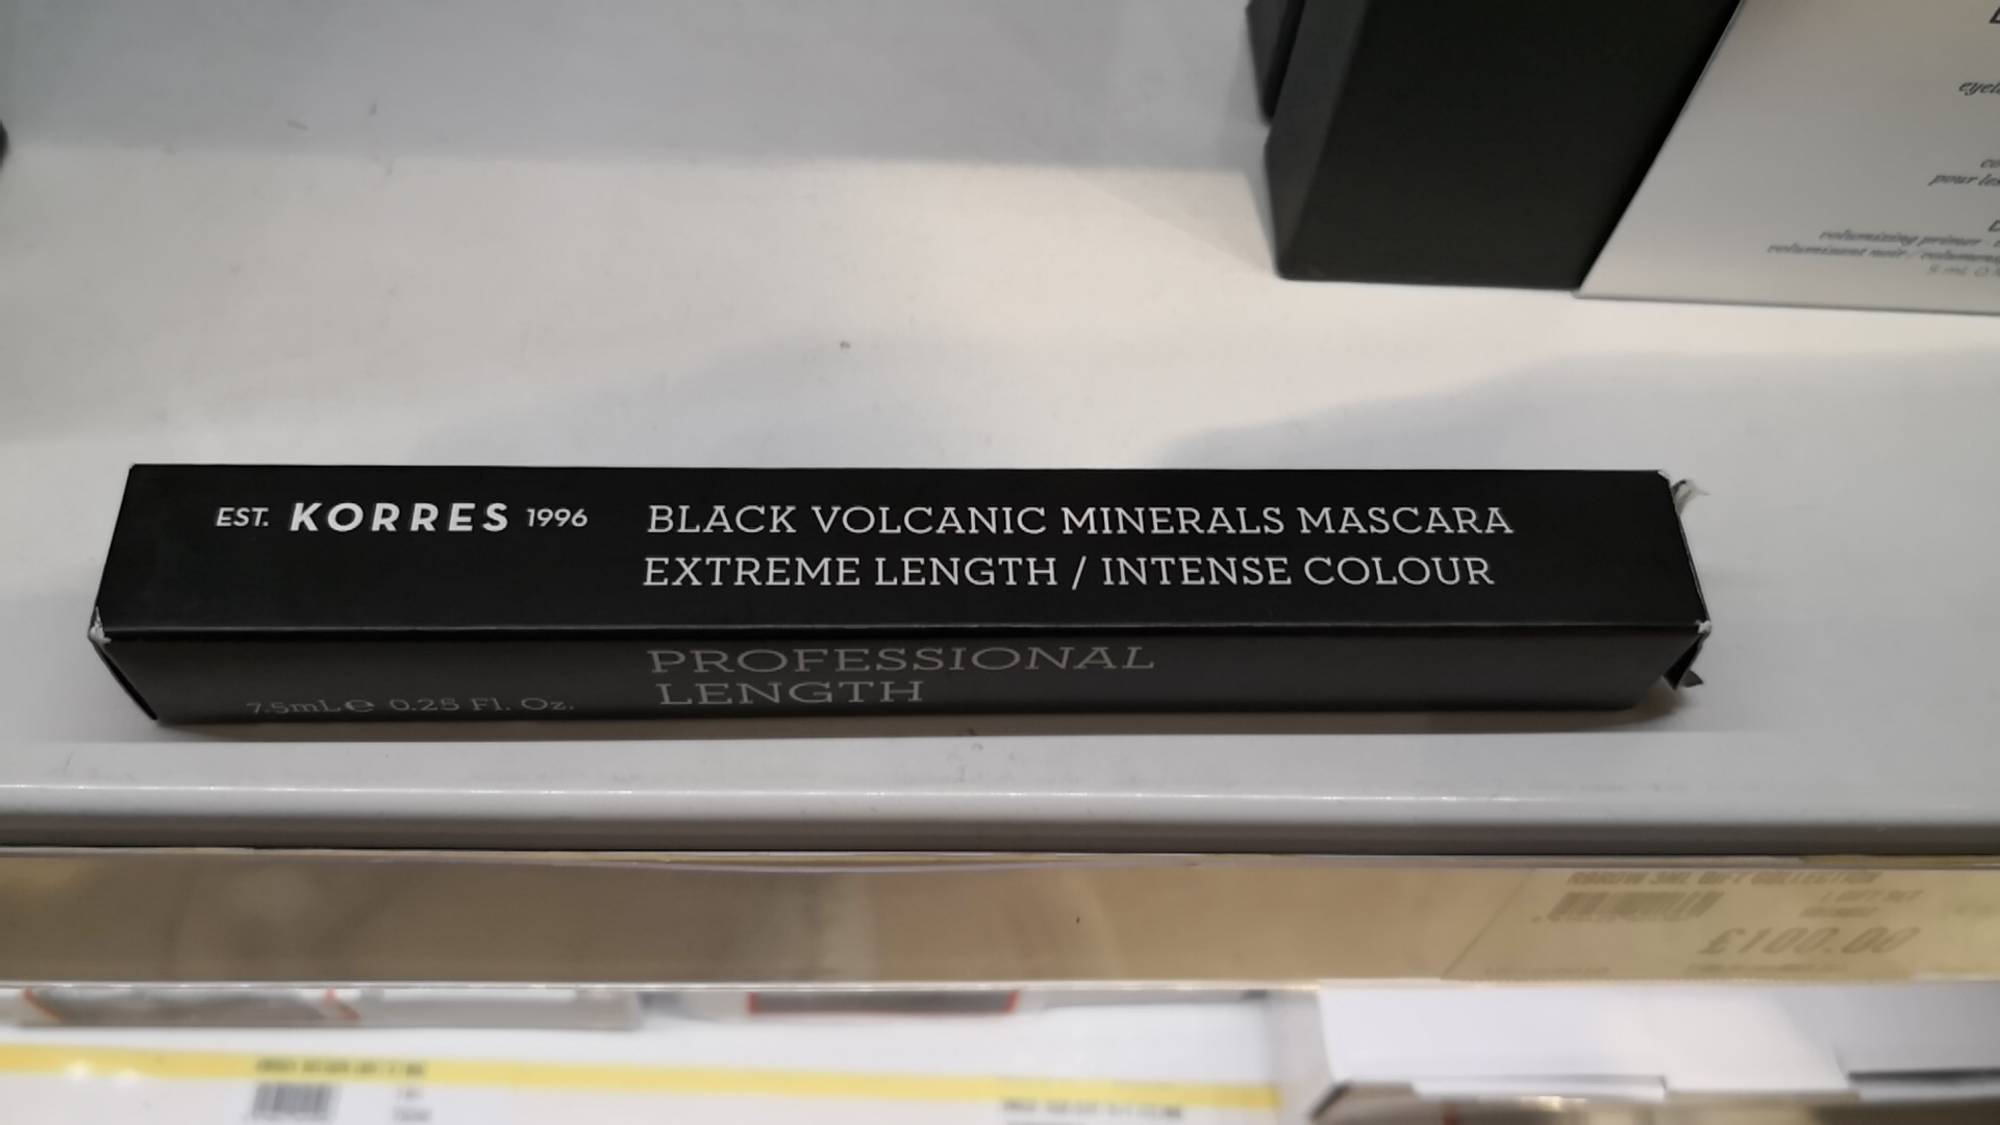 KORRES - Black volcanic minerals mascara